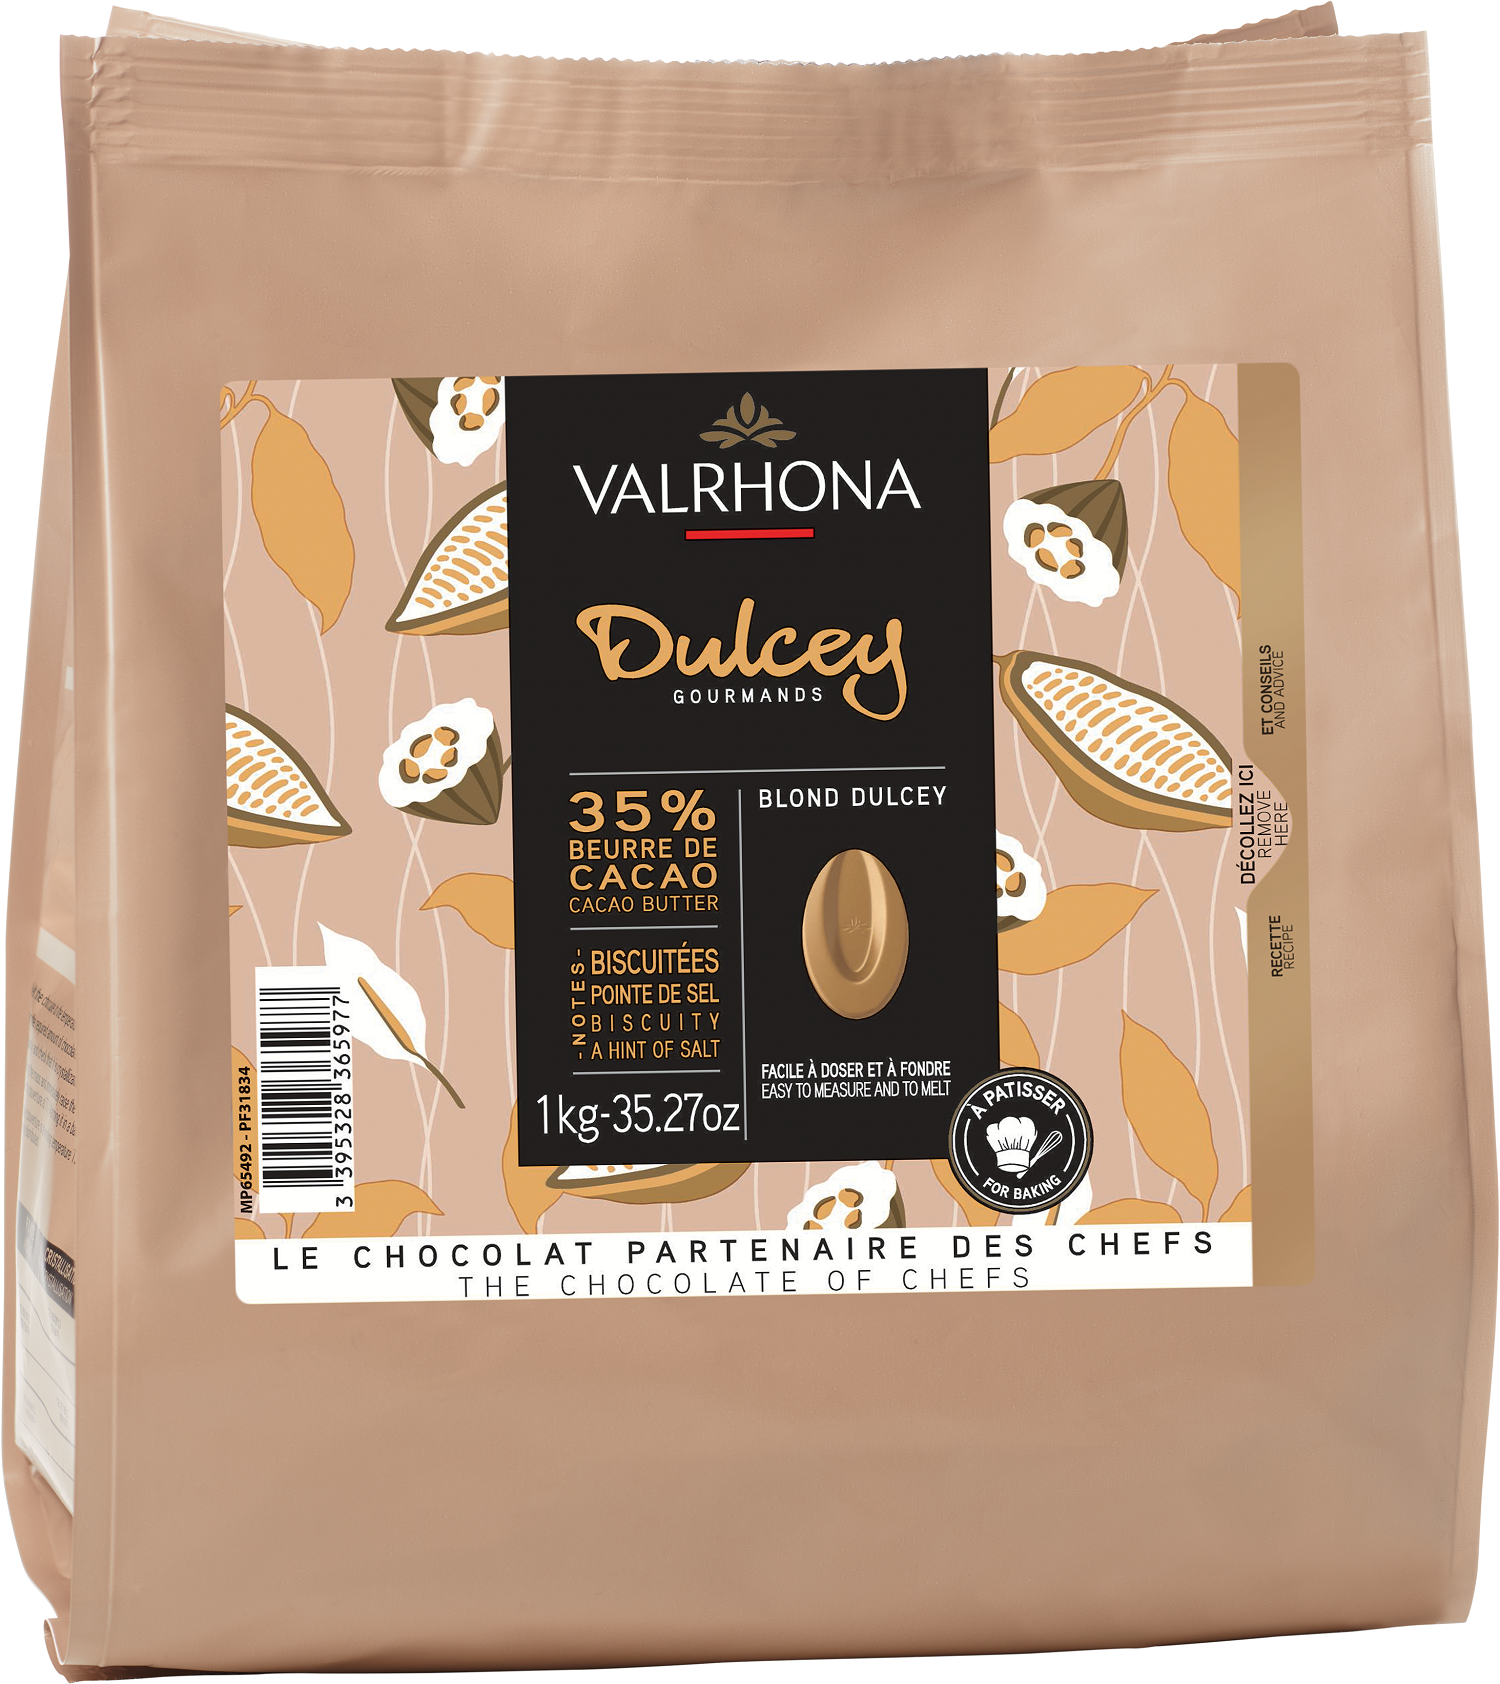 Le Moment - Connaissez-vous le chocolat Dulcey, mis en valeur cette semaine  ? Il s'agit d'un chocolat blond élaboré par la marque Valrhona. Le Dulcey  révèle une texture onctueuse, une intense douceur